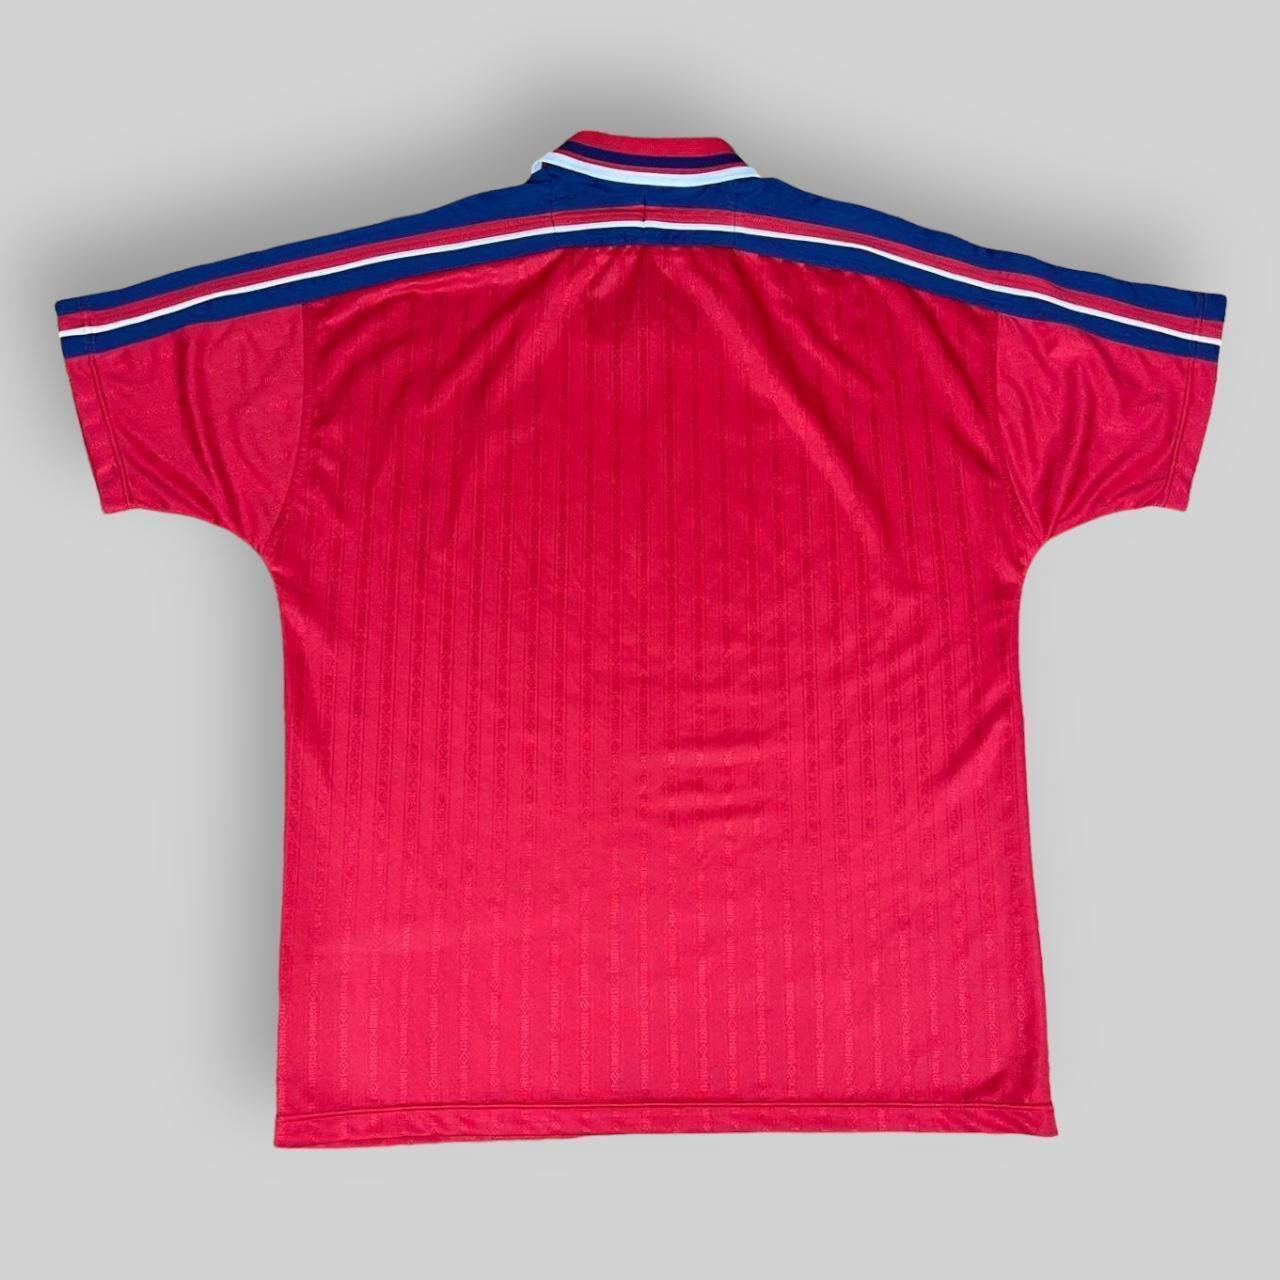 Vintage Umbro England 1998/99 Training Shirt (XL)